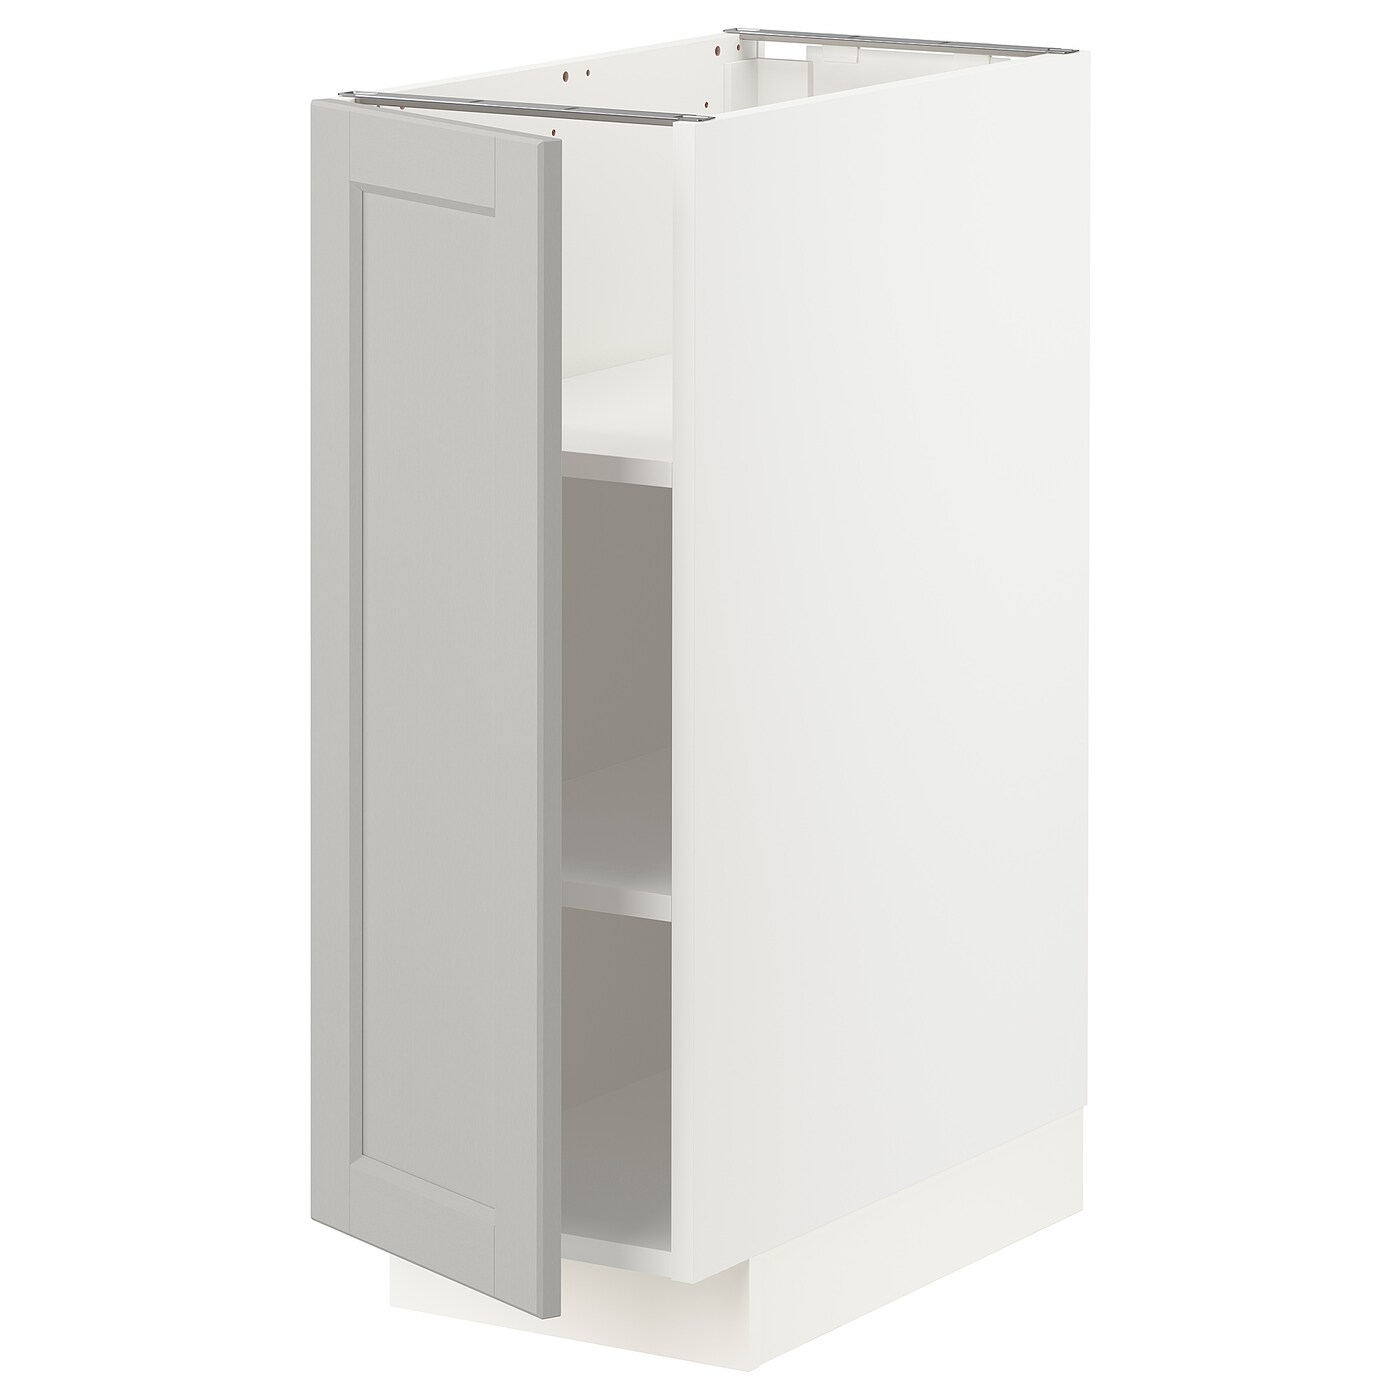 Напольный кухонный шкаф  - IKEA METOD, 88x62x30см, белый/светло-серый, МЕТОД ИКЕА